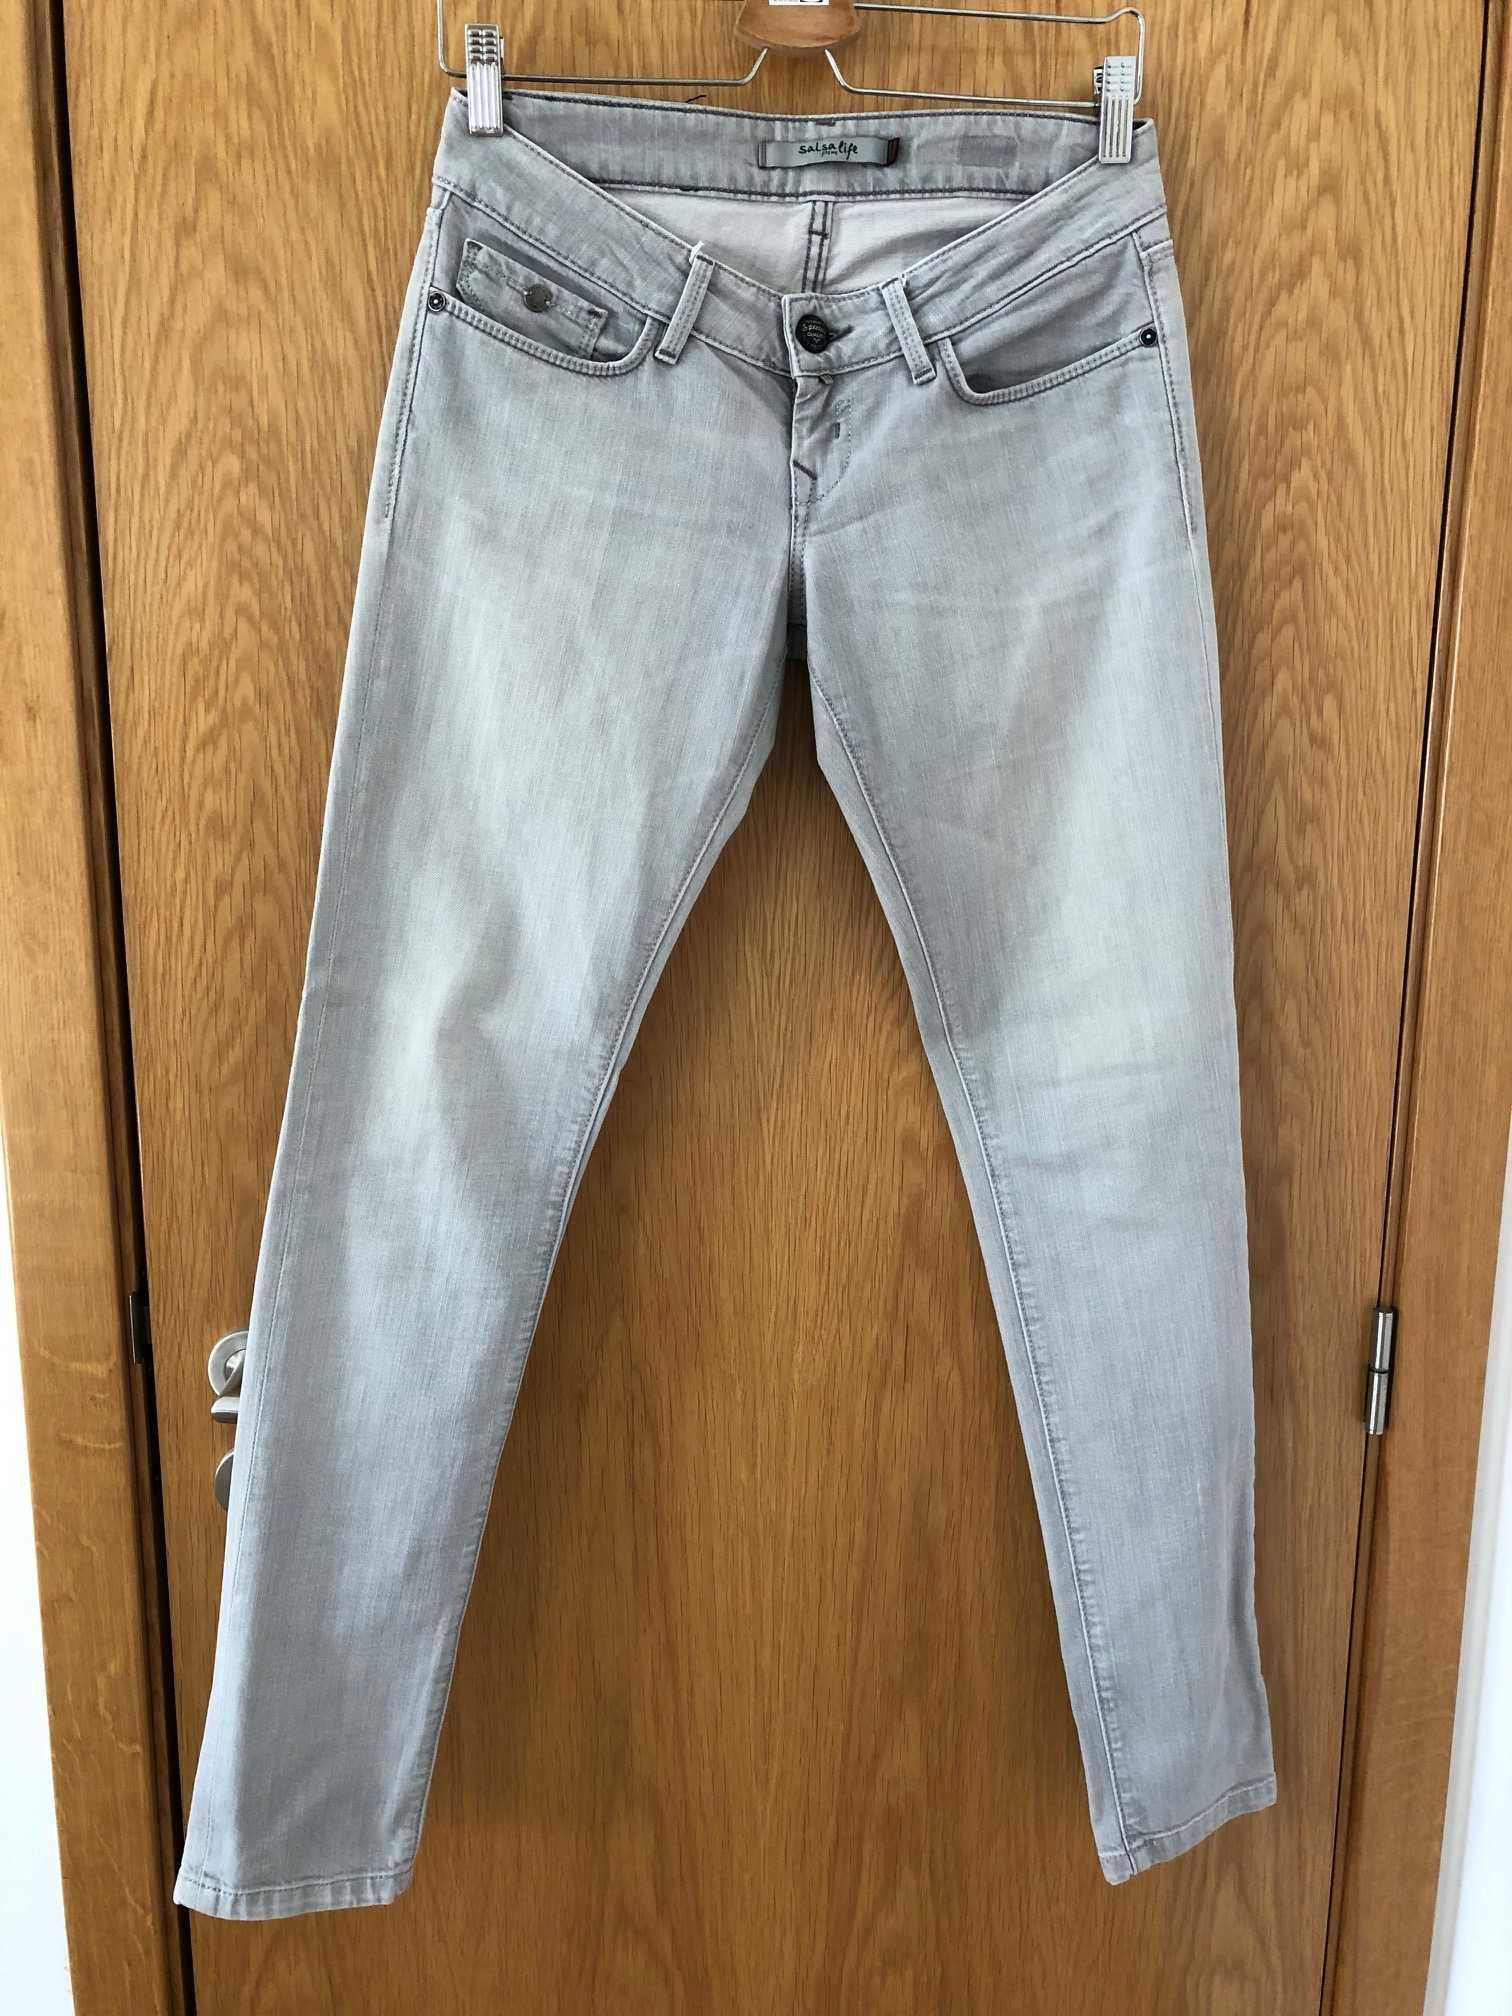 Jeans cinza claro da Salsa - tamanho 28